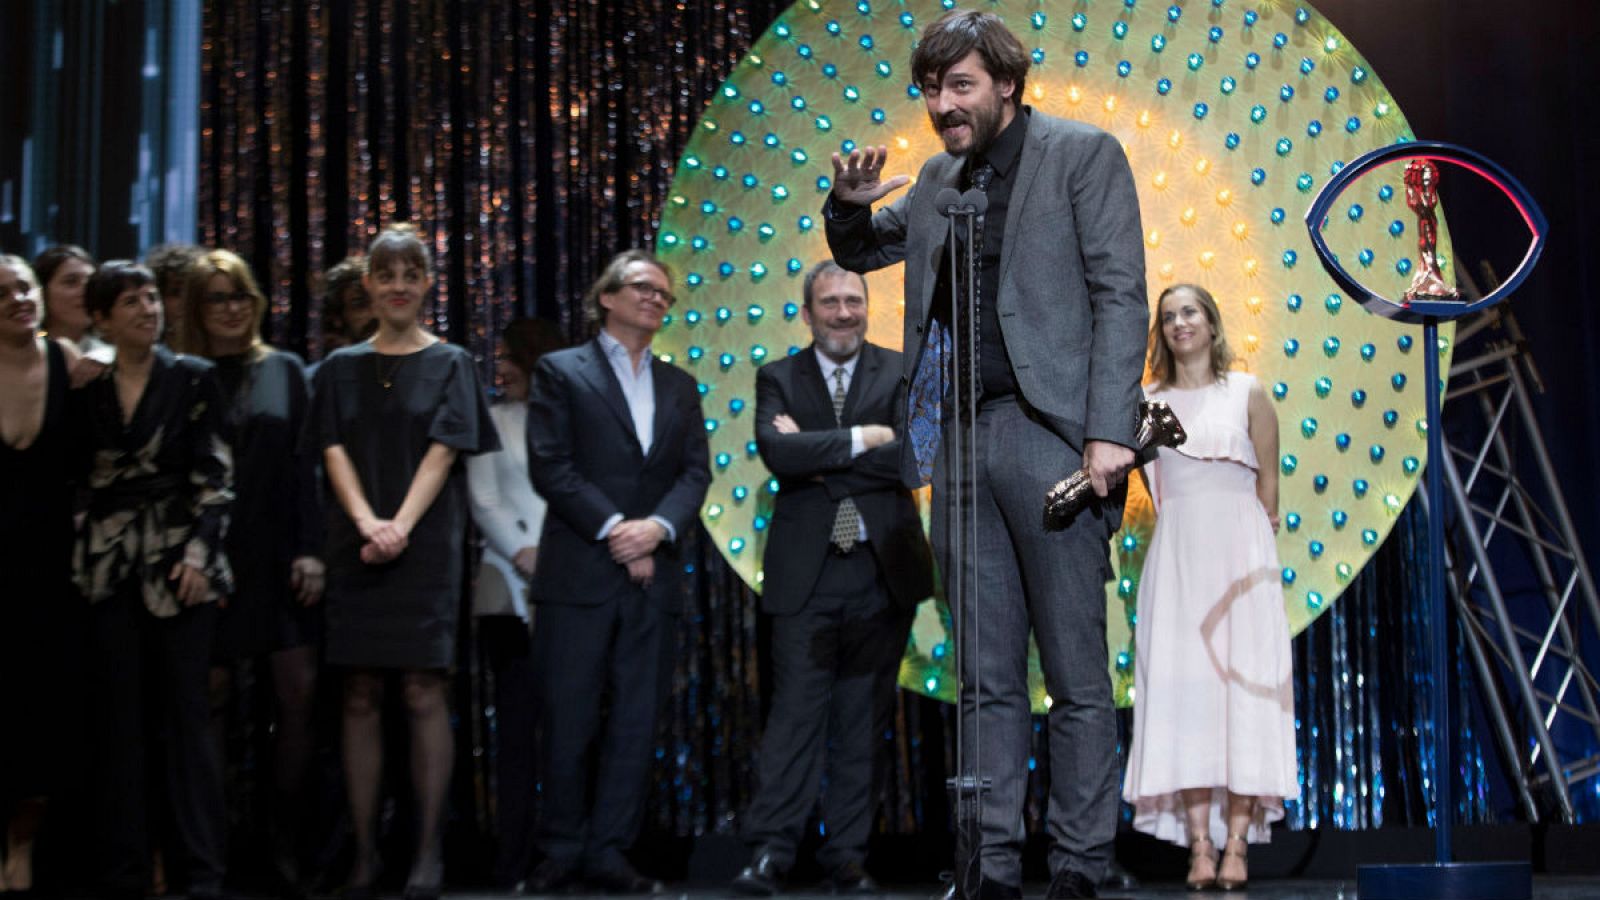 El director Carlos Marqués-Marcet recibe el Premio Gaudí a la mejor película por 'Els dies que vindran', durante la entrega de los XII Premios Gaudí que concede la Academia del Cine Catalán, en Barcelona.